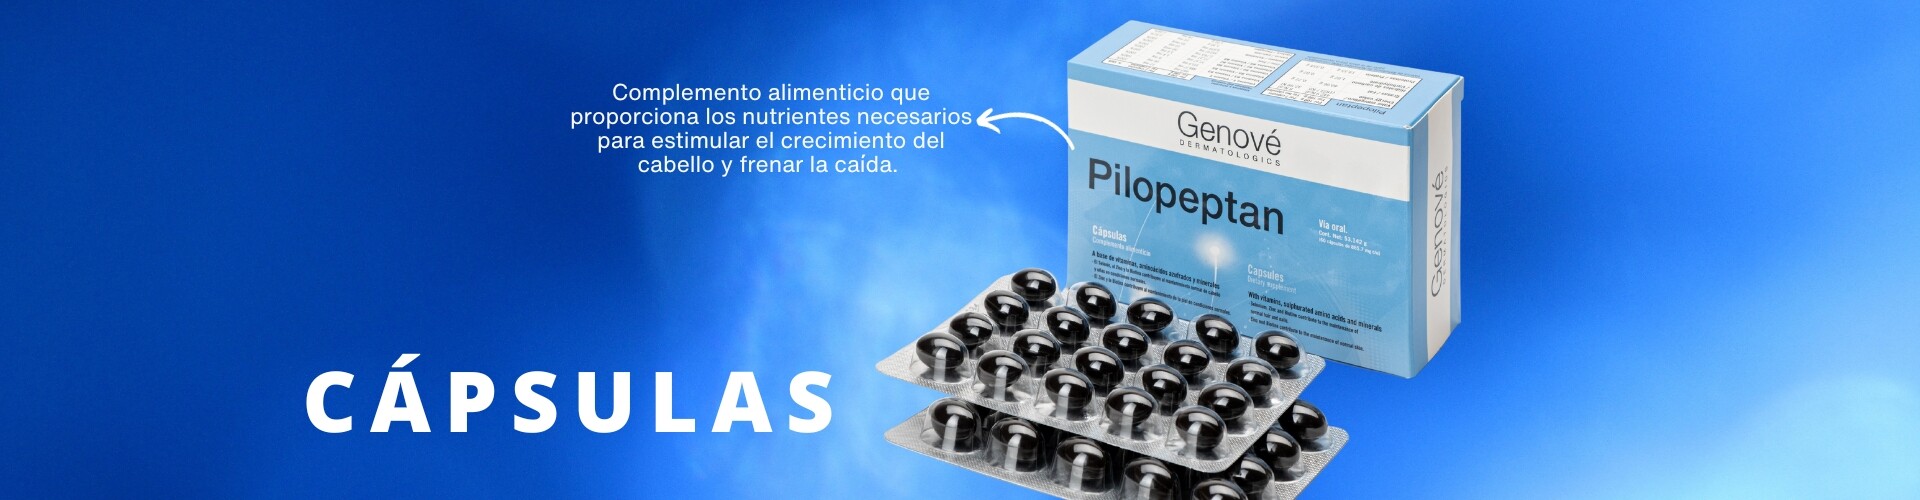 Pilopeptan capsulas